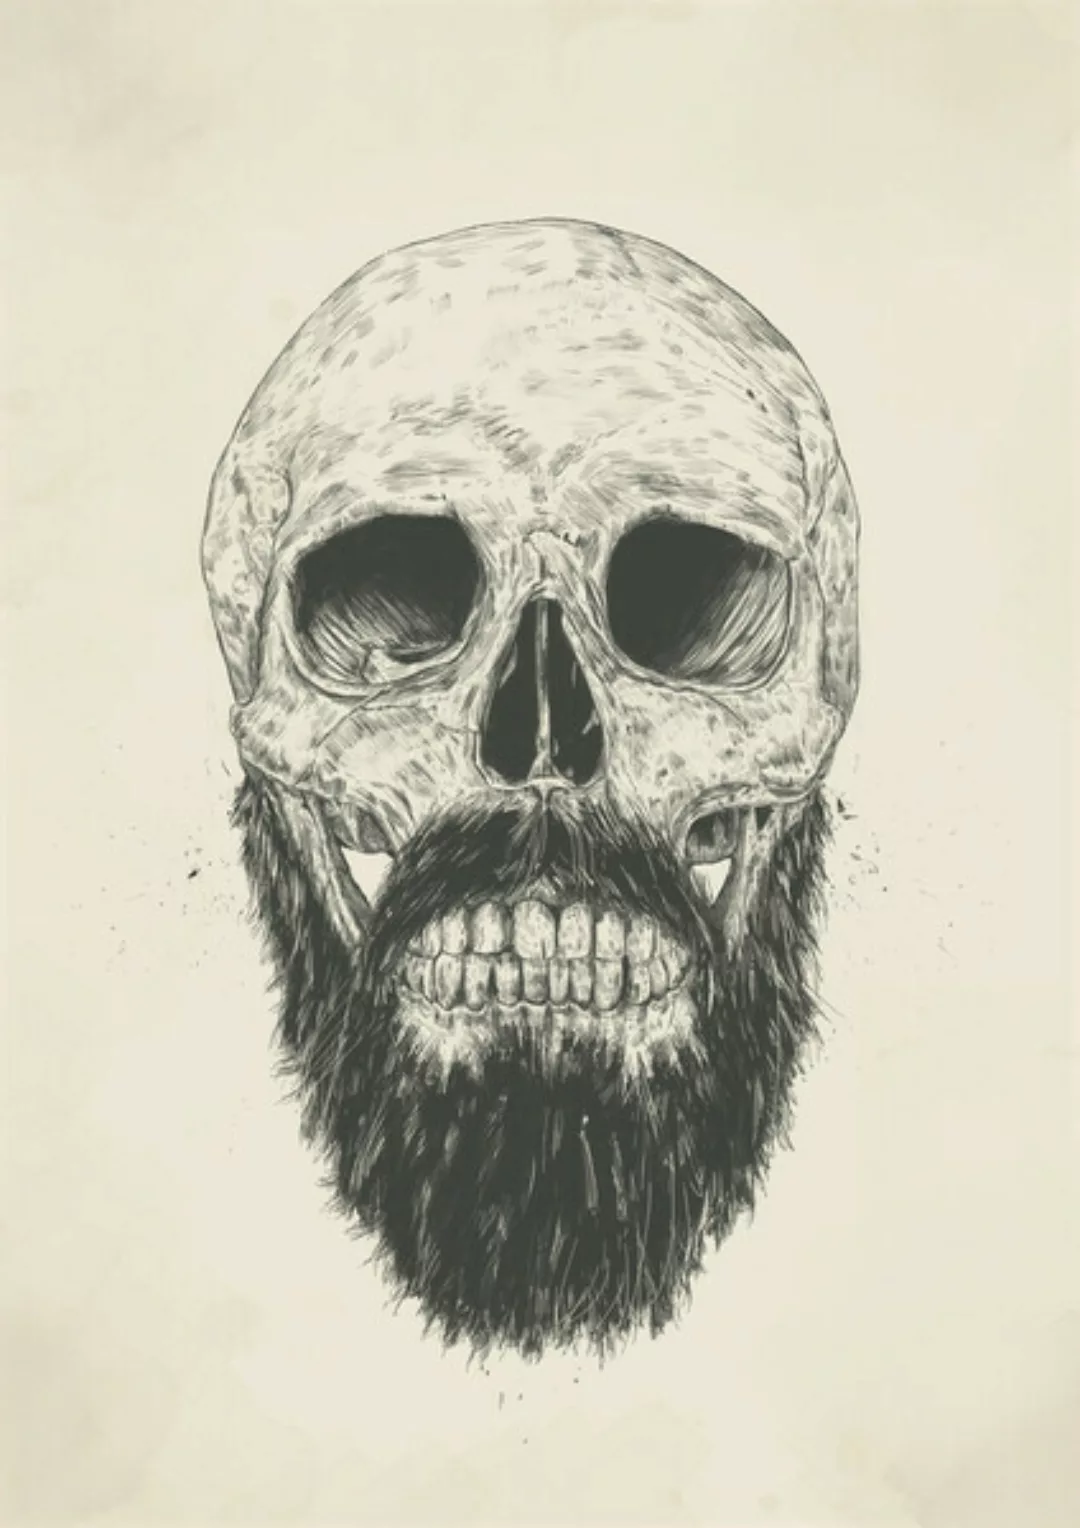 Poster / Leinwandbild - The Beard Is Not Dead günstig online kaufen